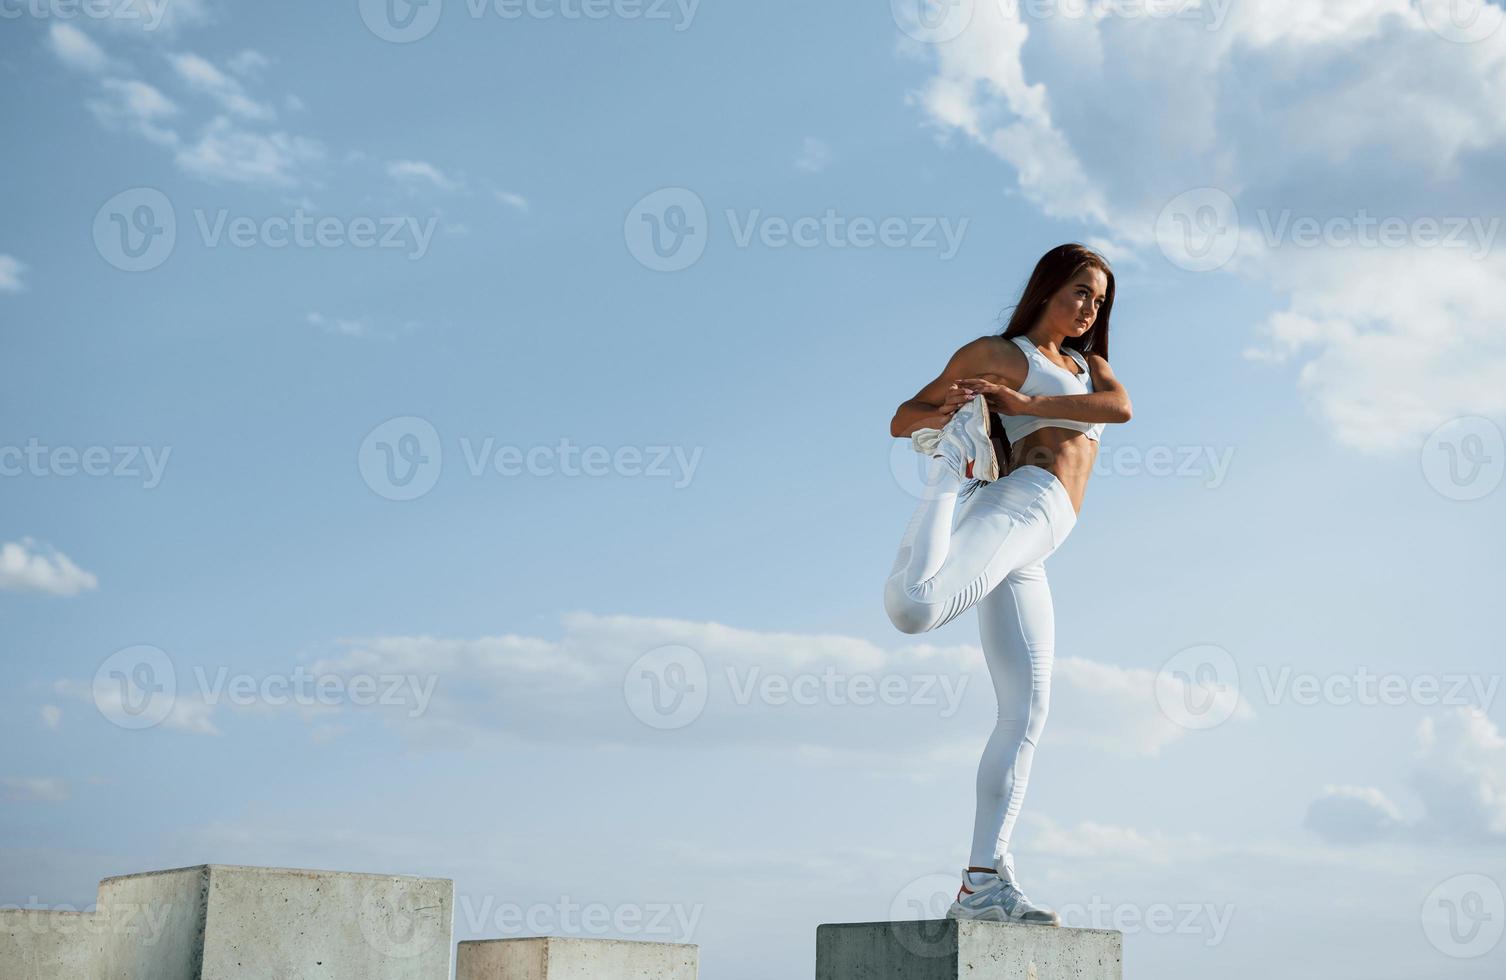 på de cement kub. skott av sportigt kvinna håller på med kondition övningar nära de sjö på dagtid foto